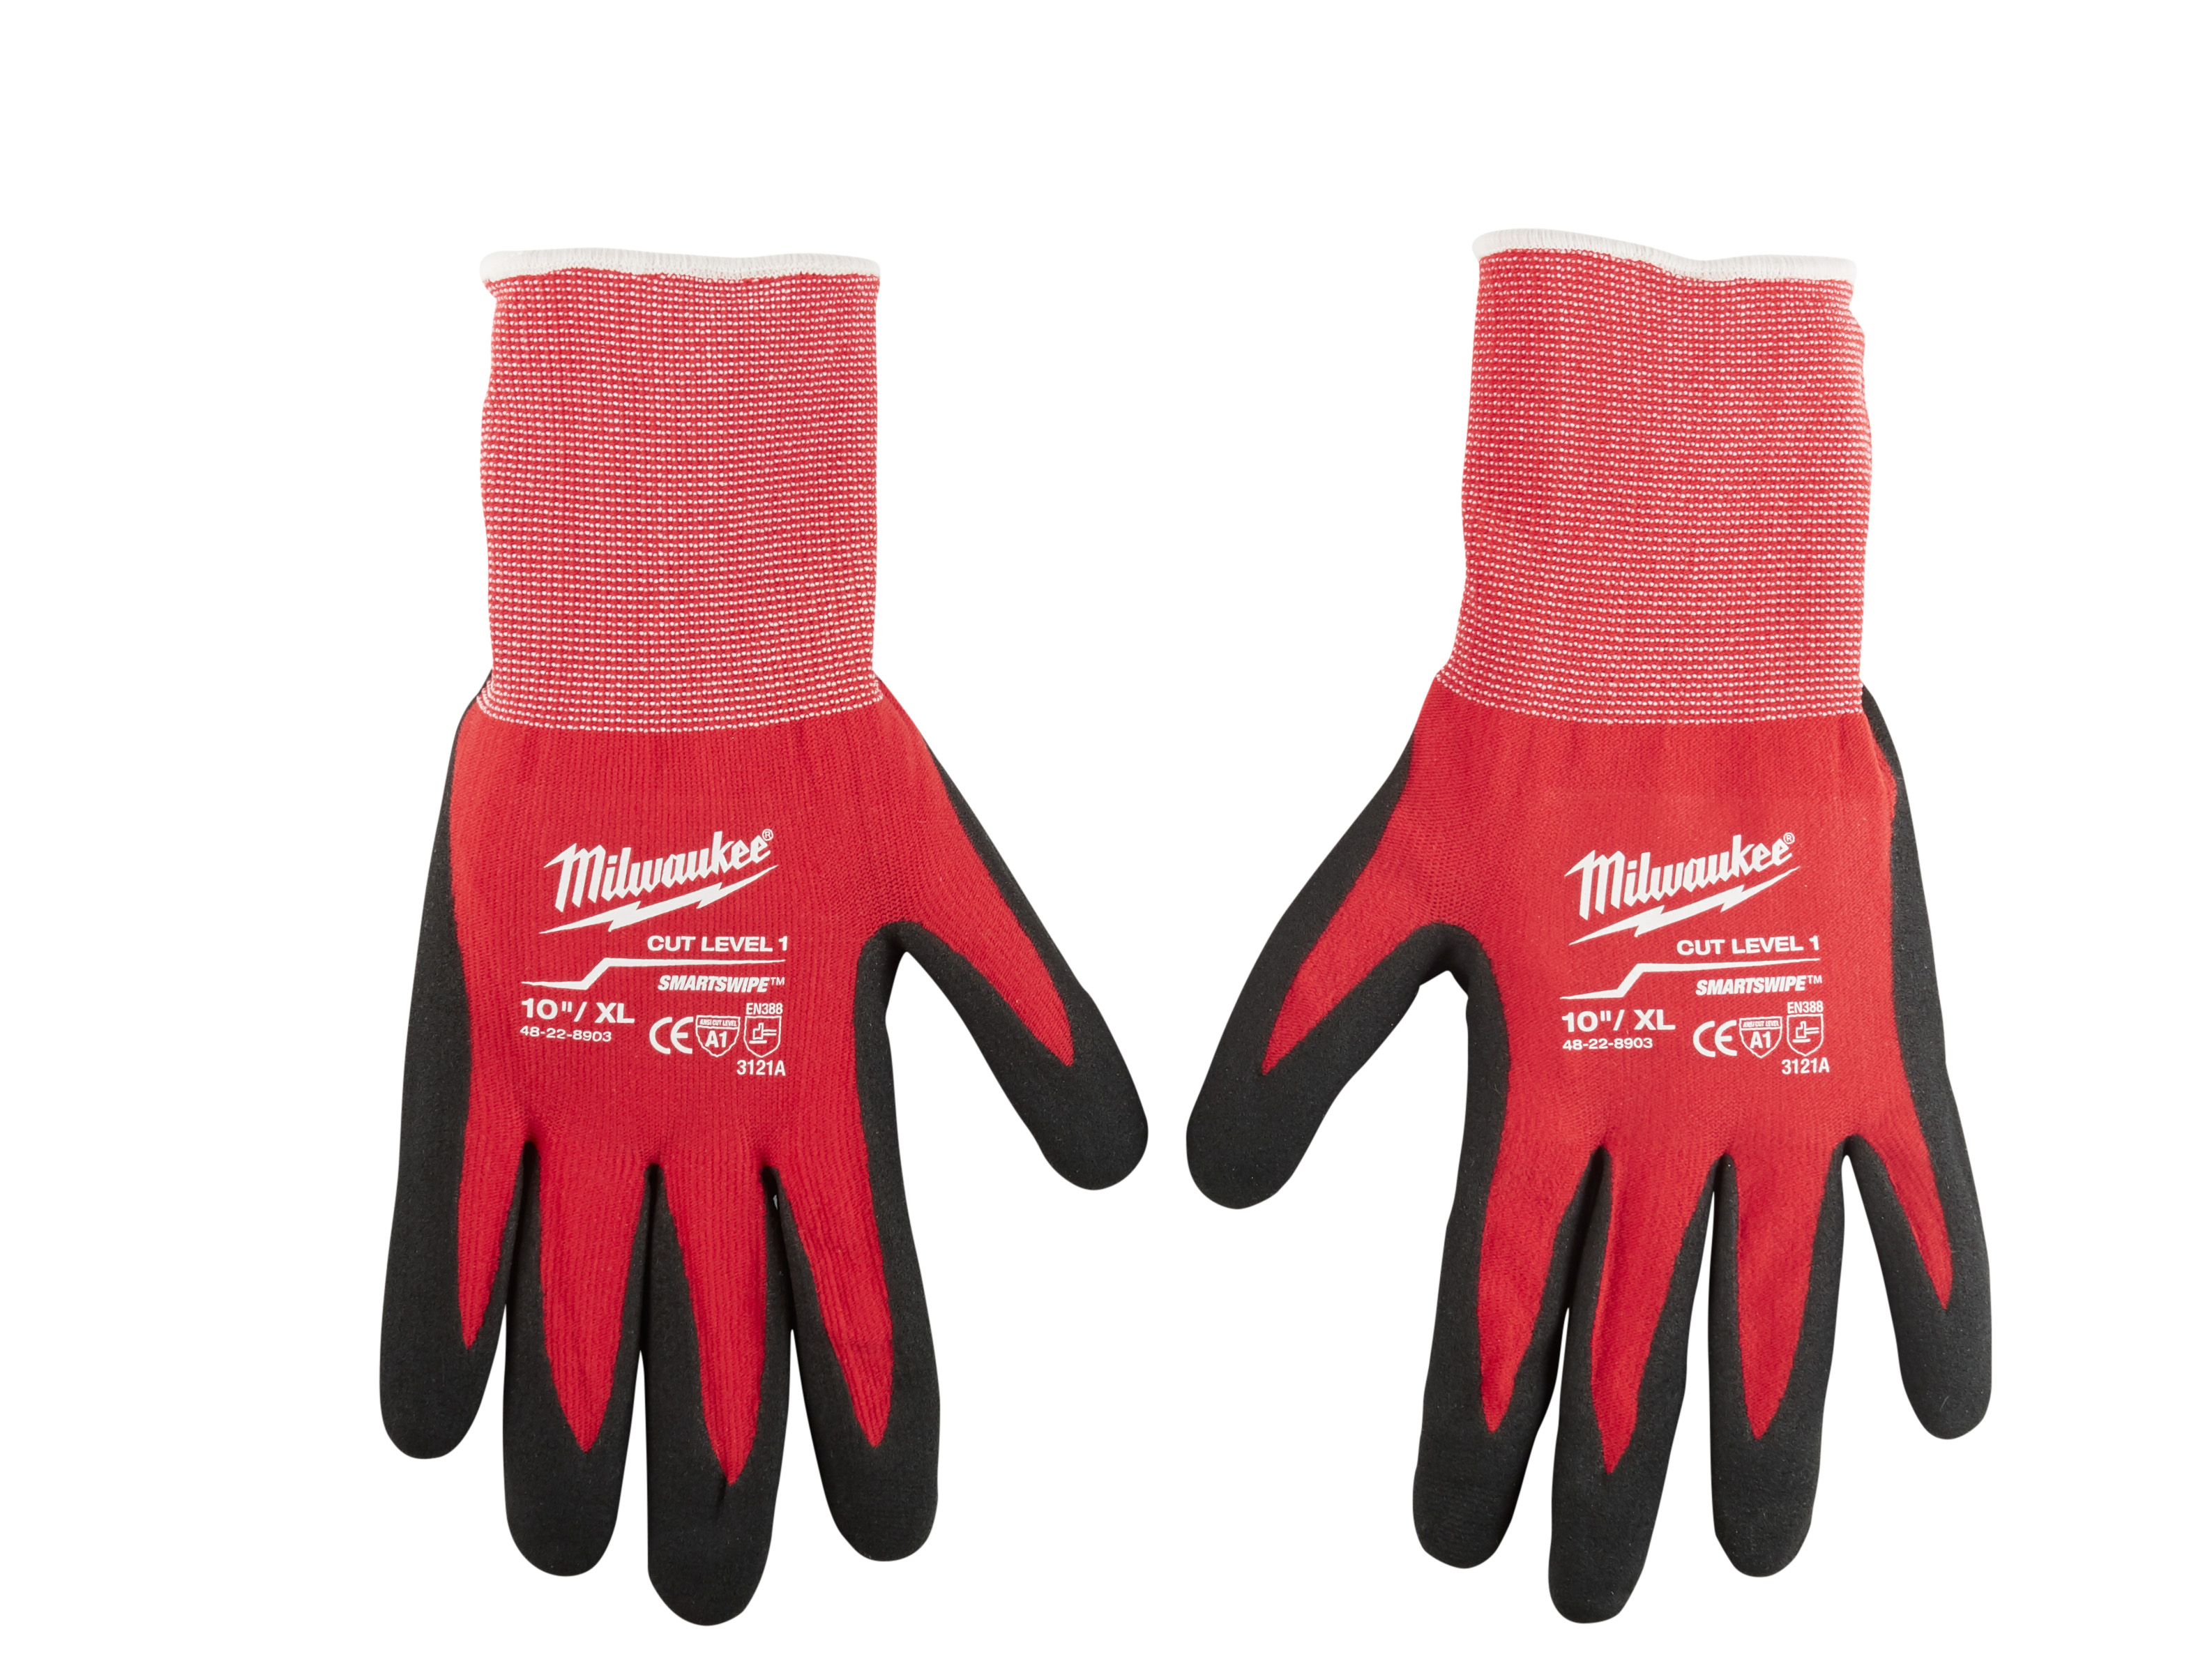 Cut 1 Dipped Gloves - XL